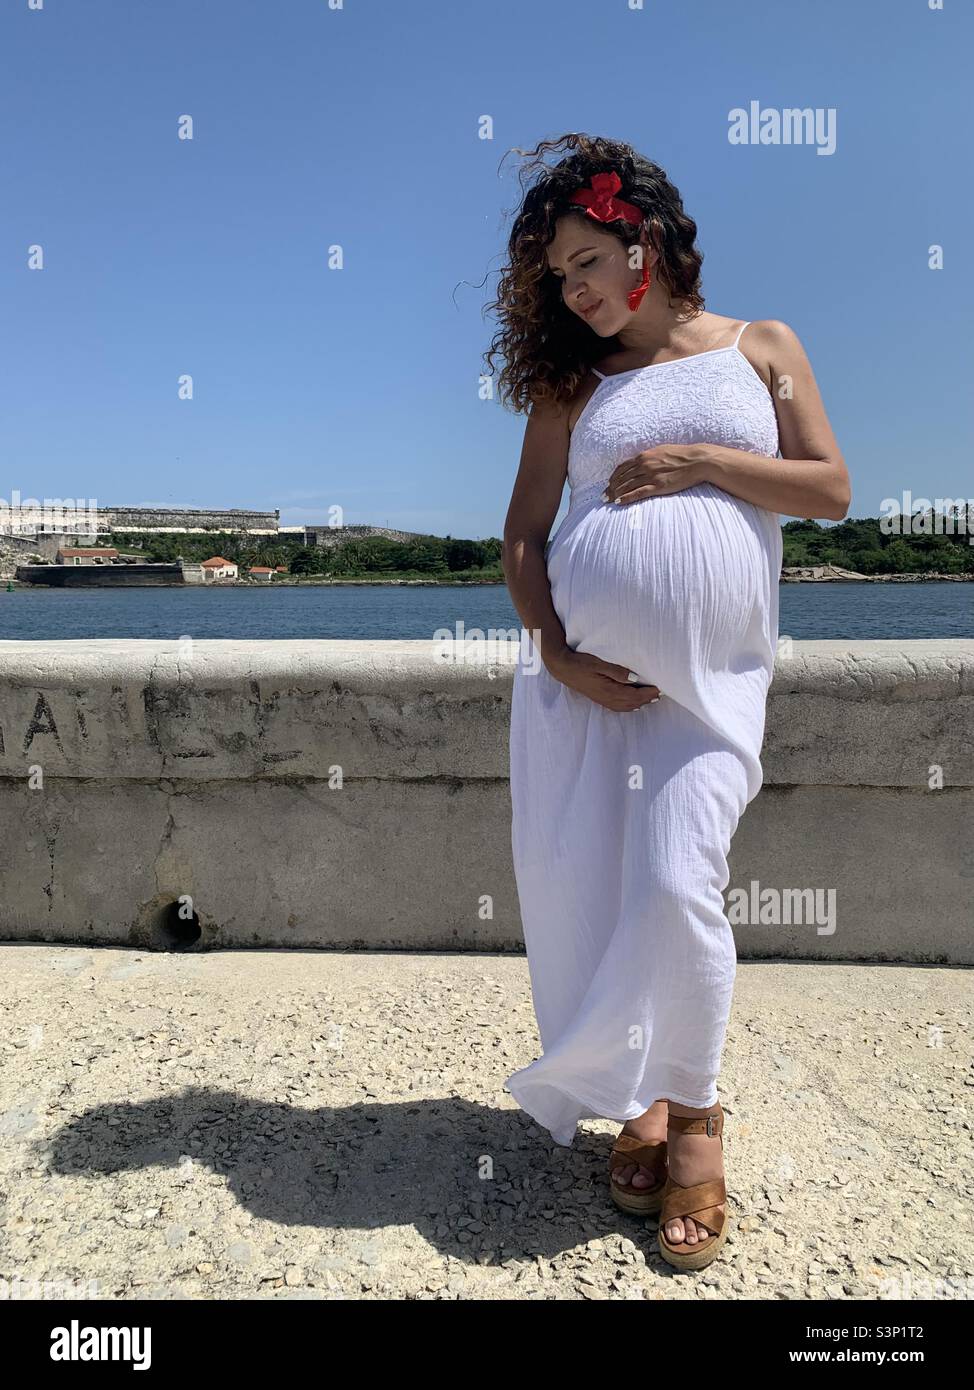 Huit mois, la femme enceinte caresse tenimpatiemment son ventre croissant dans la Vieille Havane, la Havane, Cuba, les Caraïbes. Attentes en matière de maternité. Banque D'Images